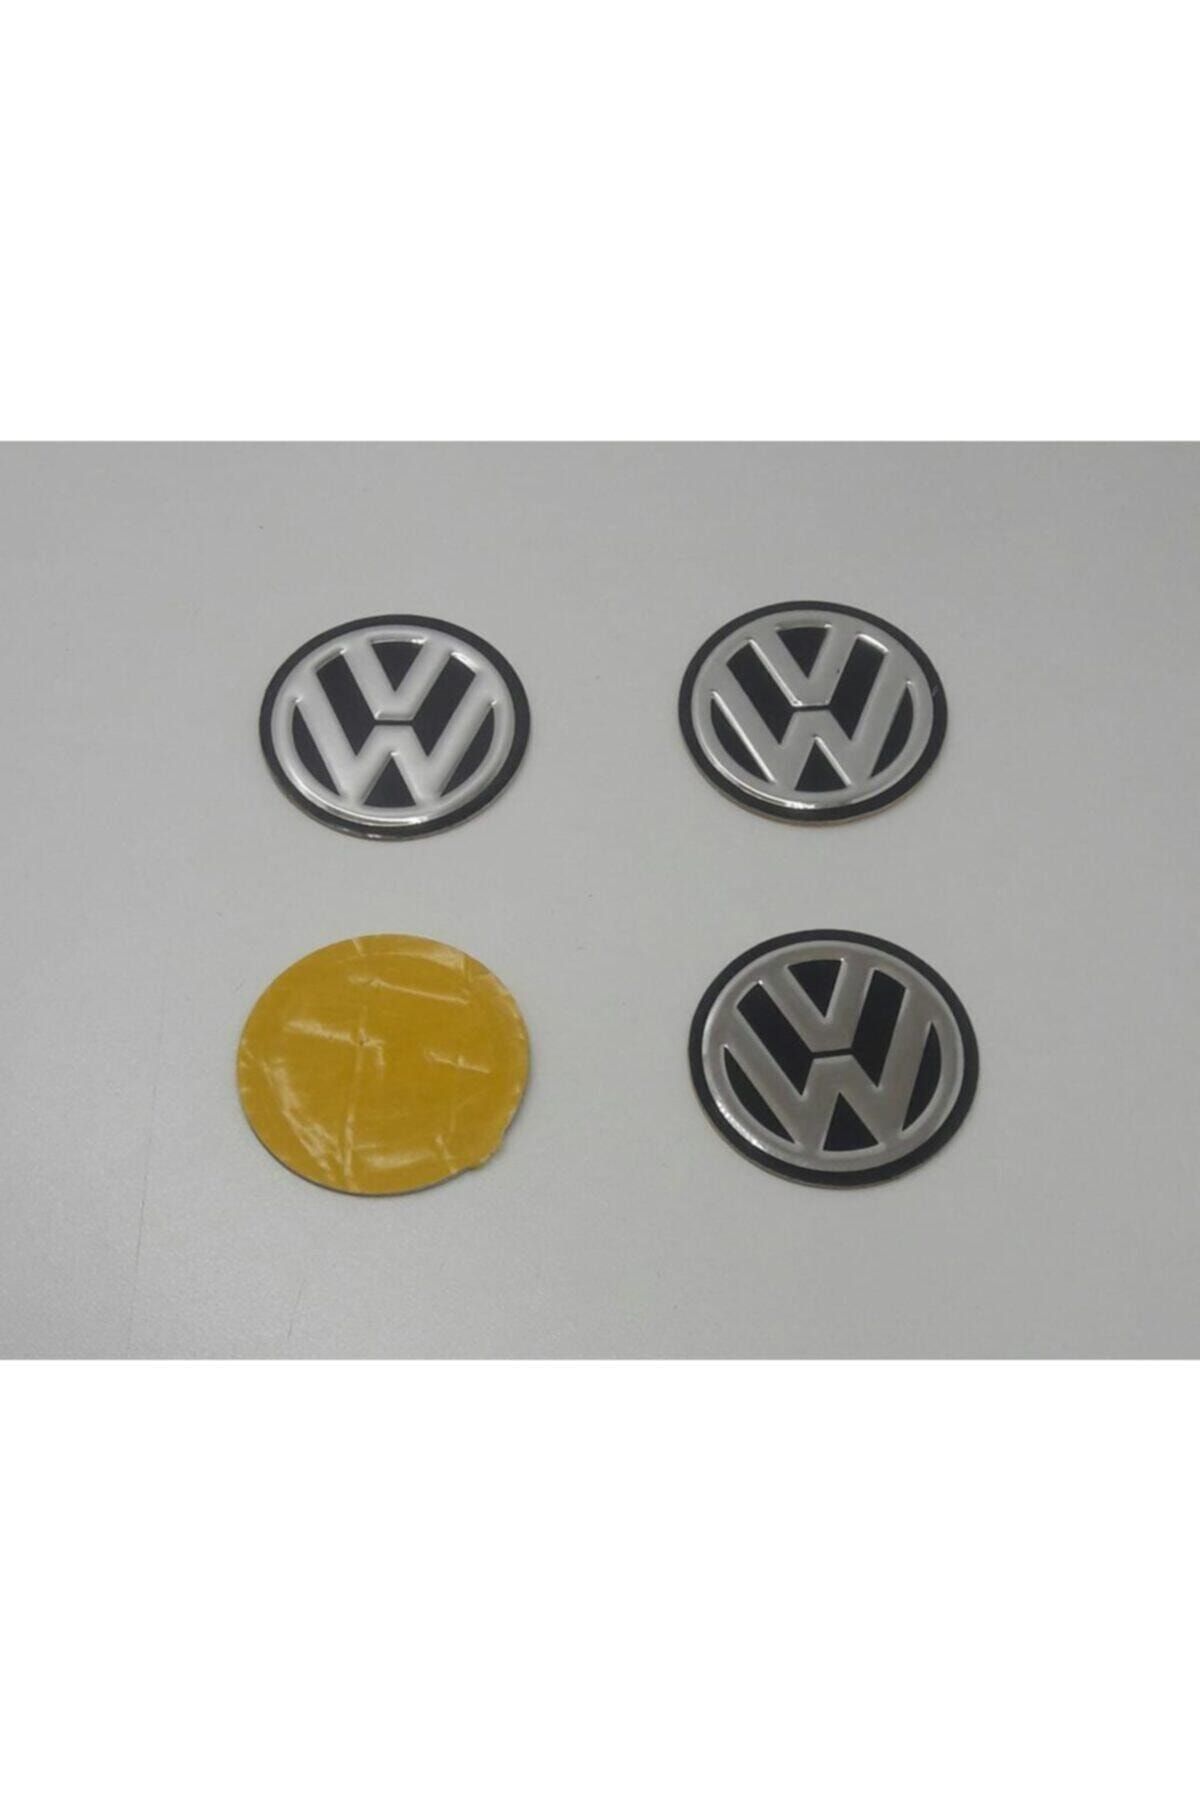 Volkswagen Jant Göbeği Etiketi 55 mm Çap